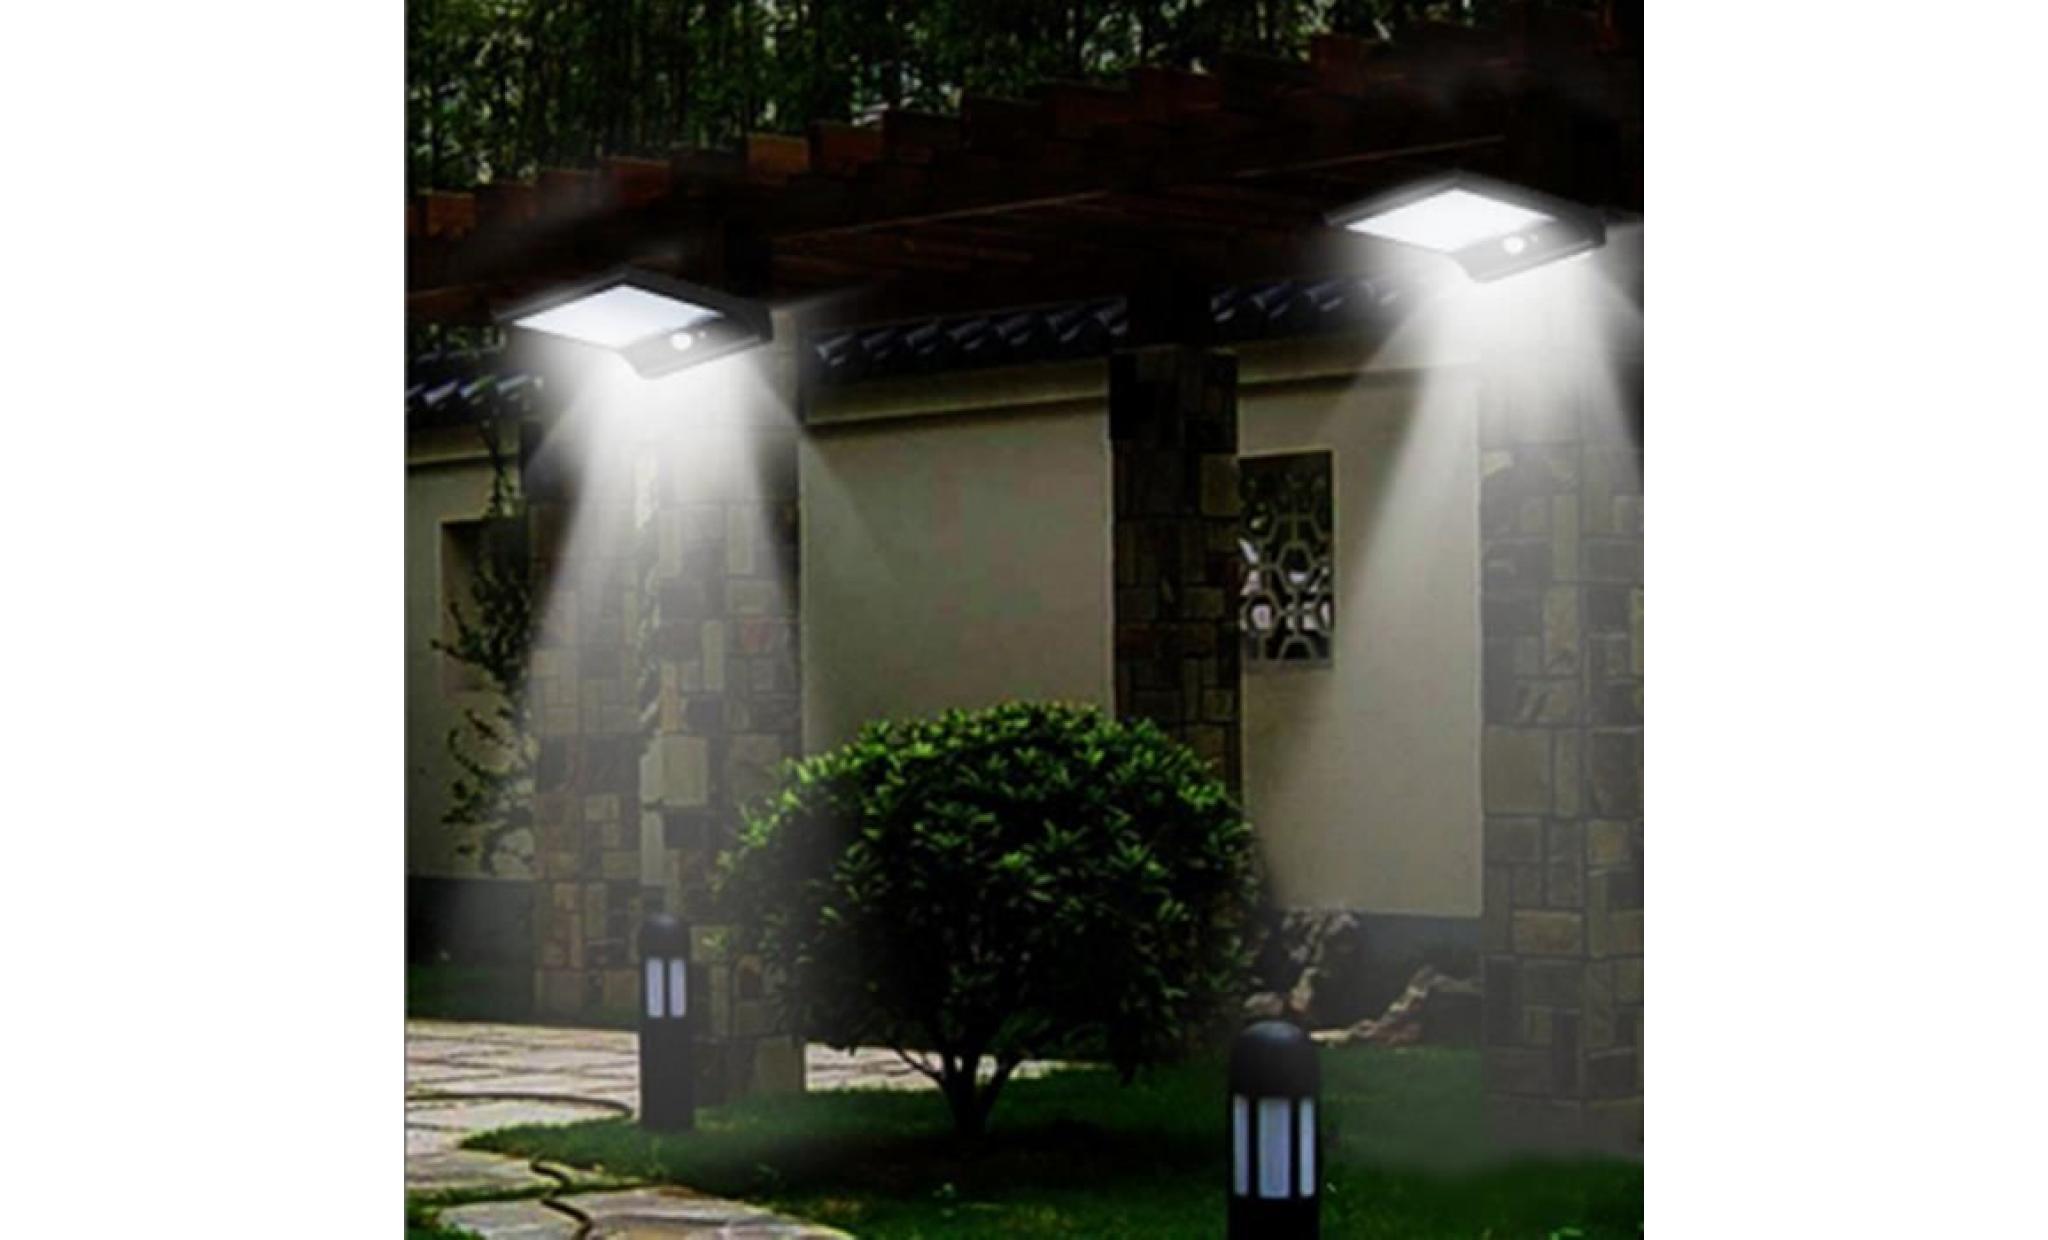 neÜfu applique etanche 36led energie solaire pir capteur de mouvement lumière mural lampe en plein air jardin pas cher